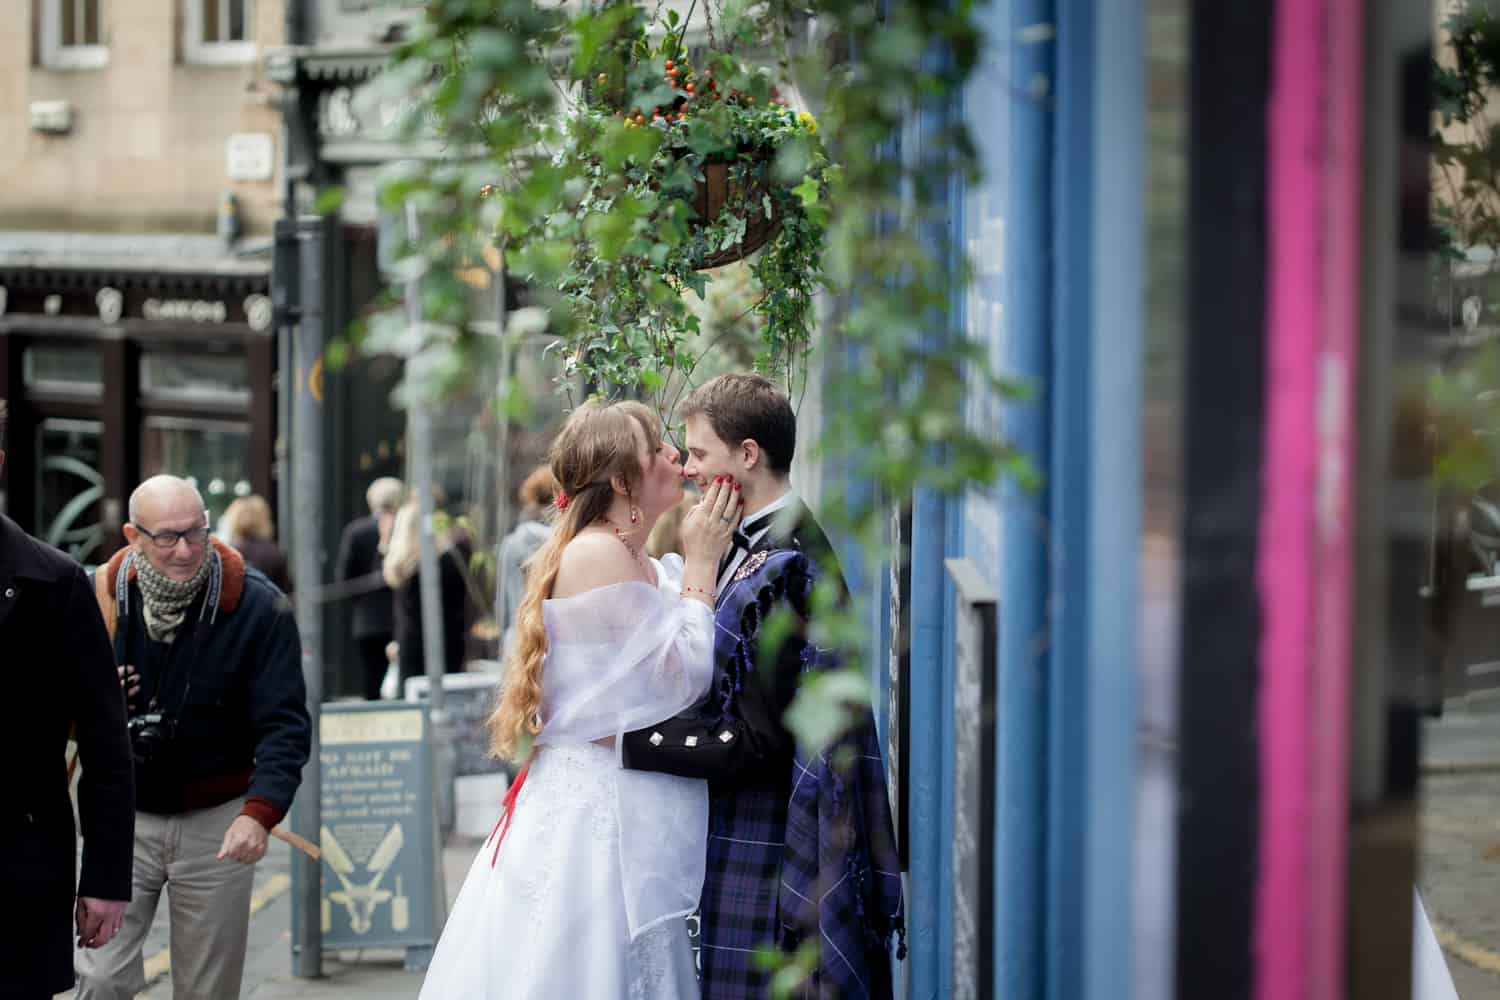 Top romantic places to propose in Edinburgh. 63